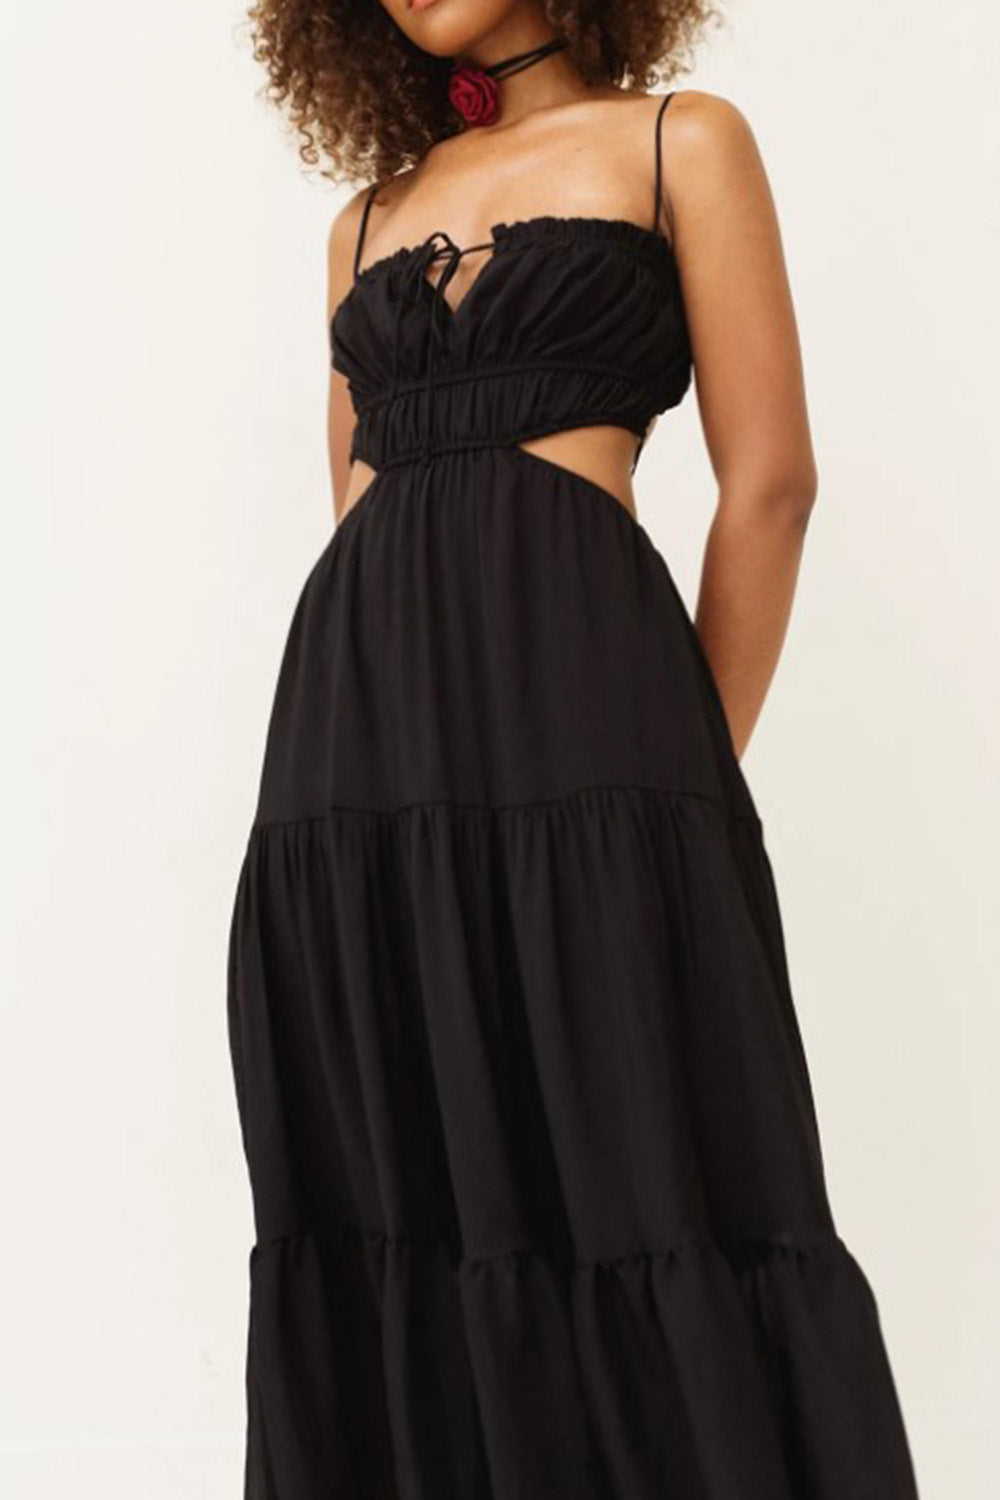 Lovely Black Dress